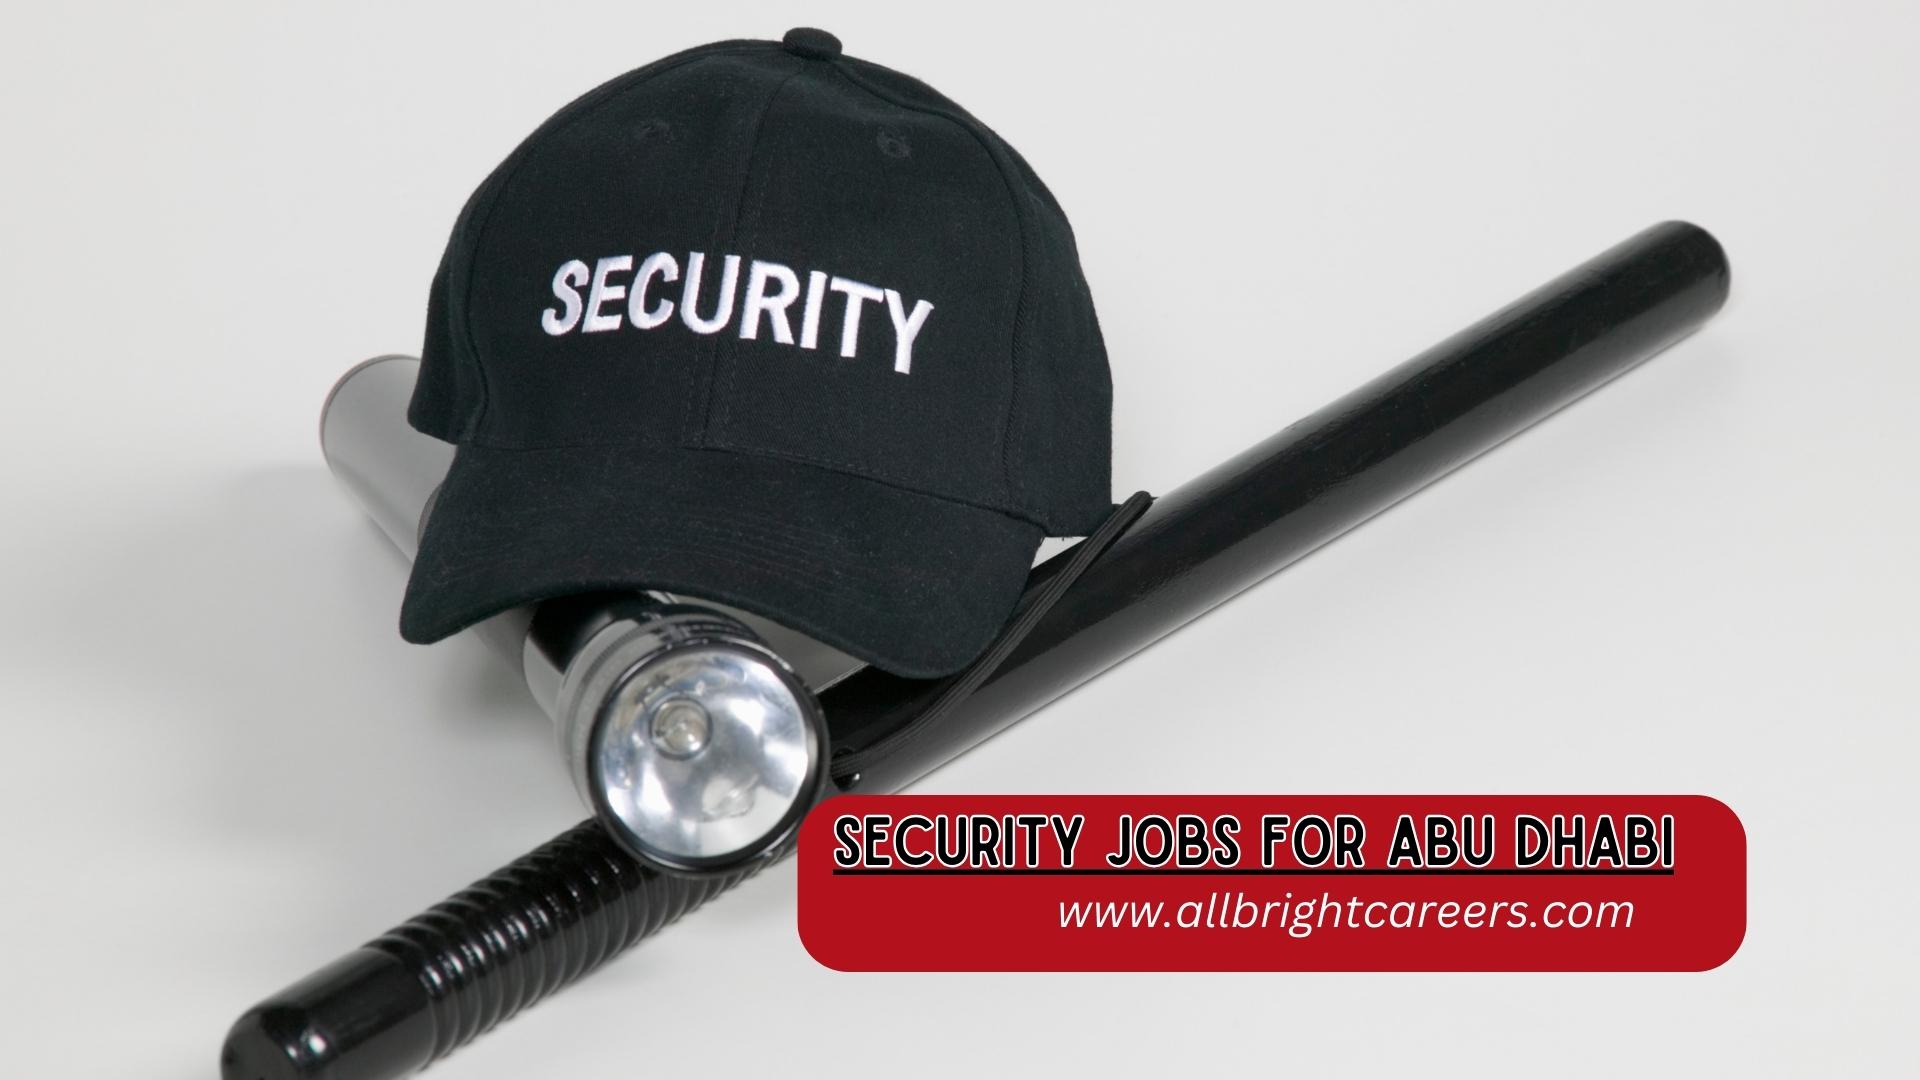 Security jobs for Abu Dhabi